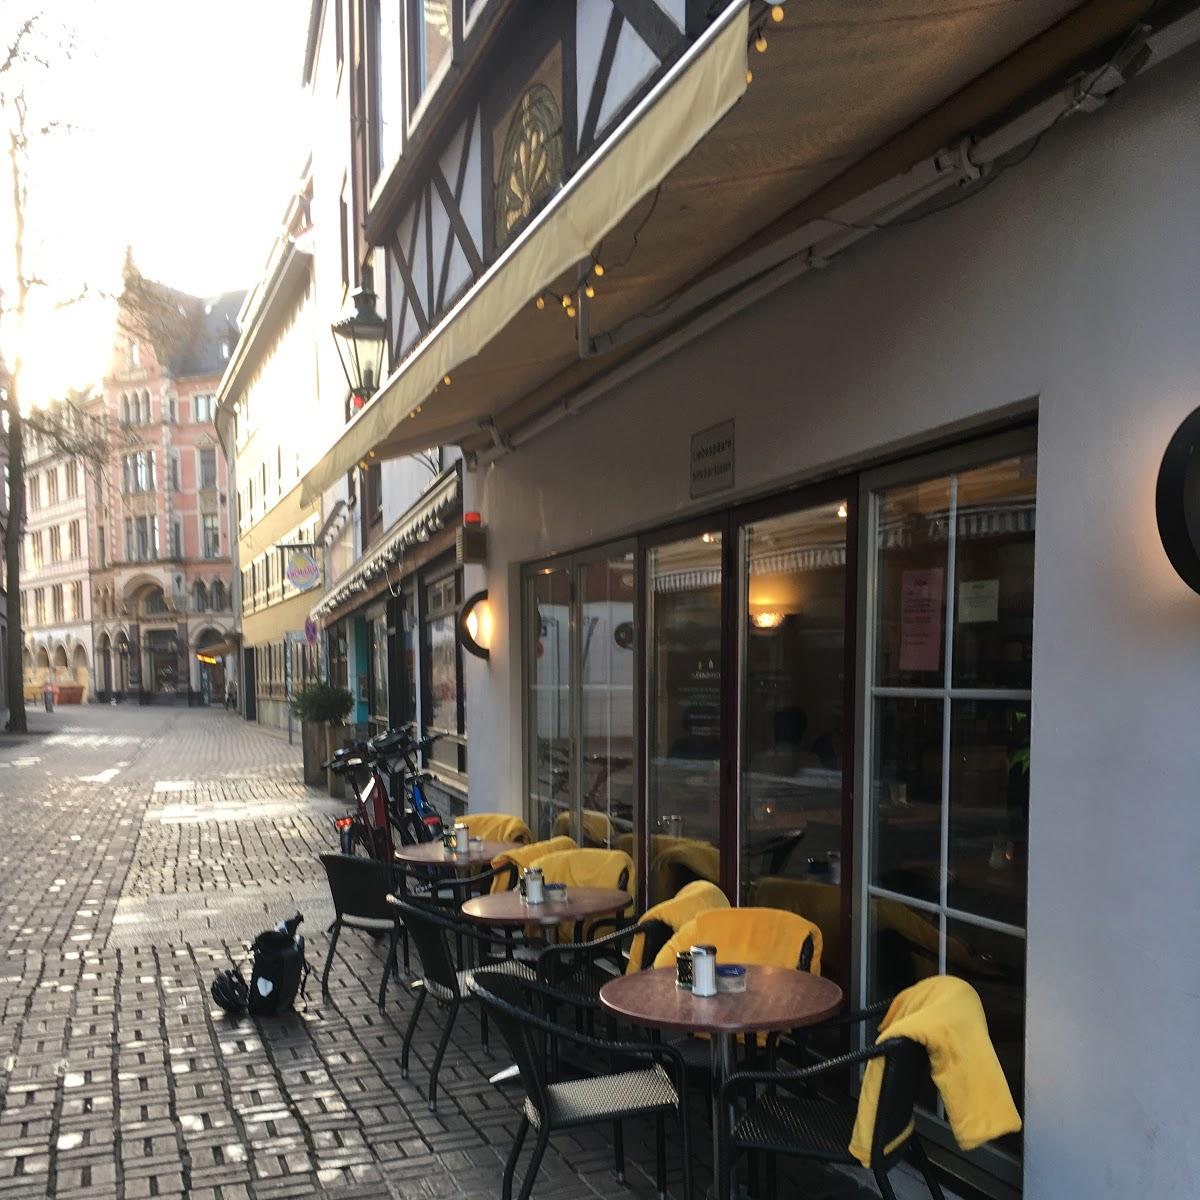 Restaurant "Café Konrad" in Hannover